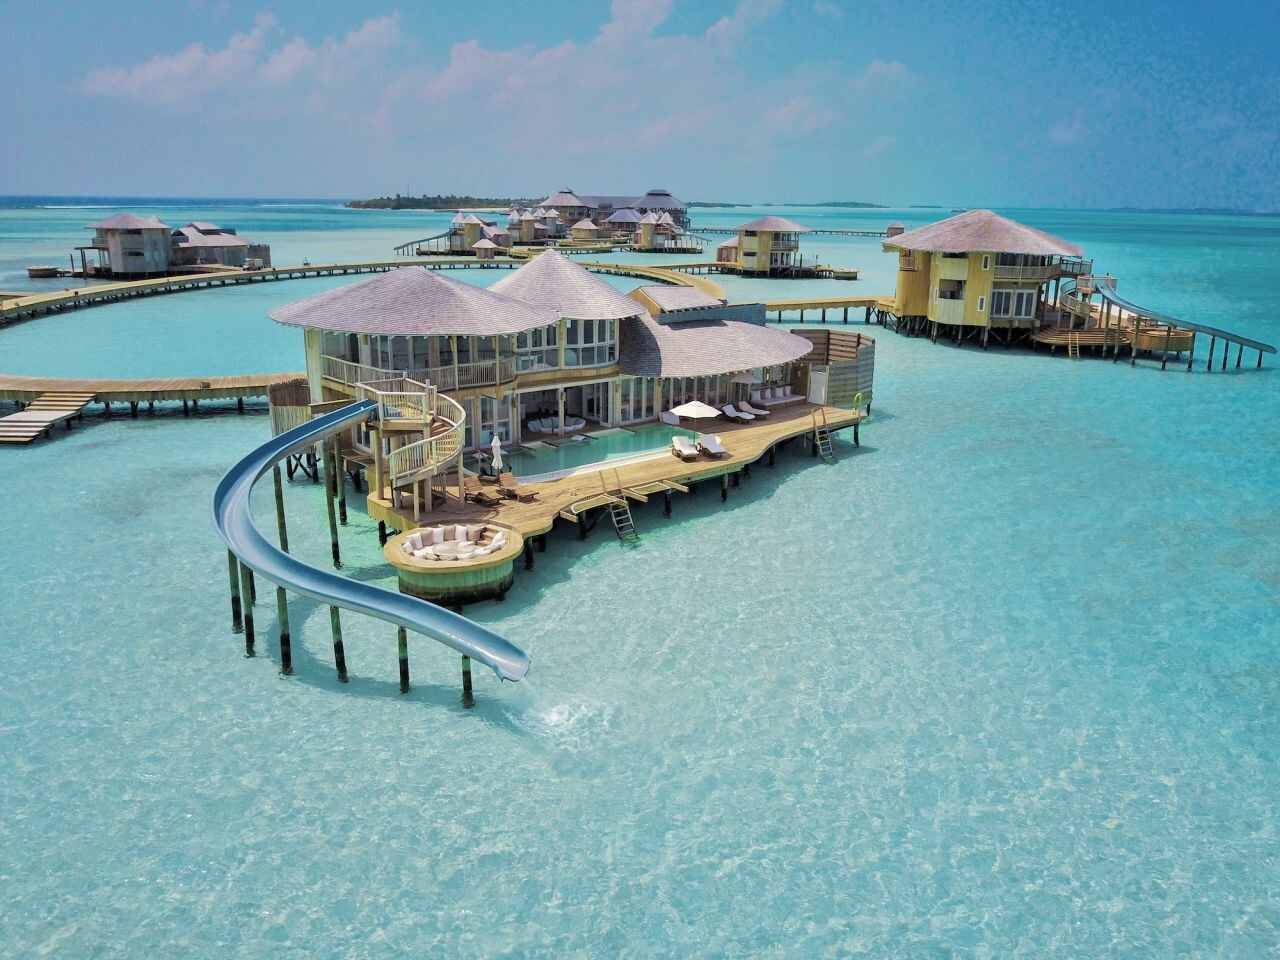 lastssecond.ir-luxurios hotels in maldives 06.jpg